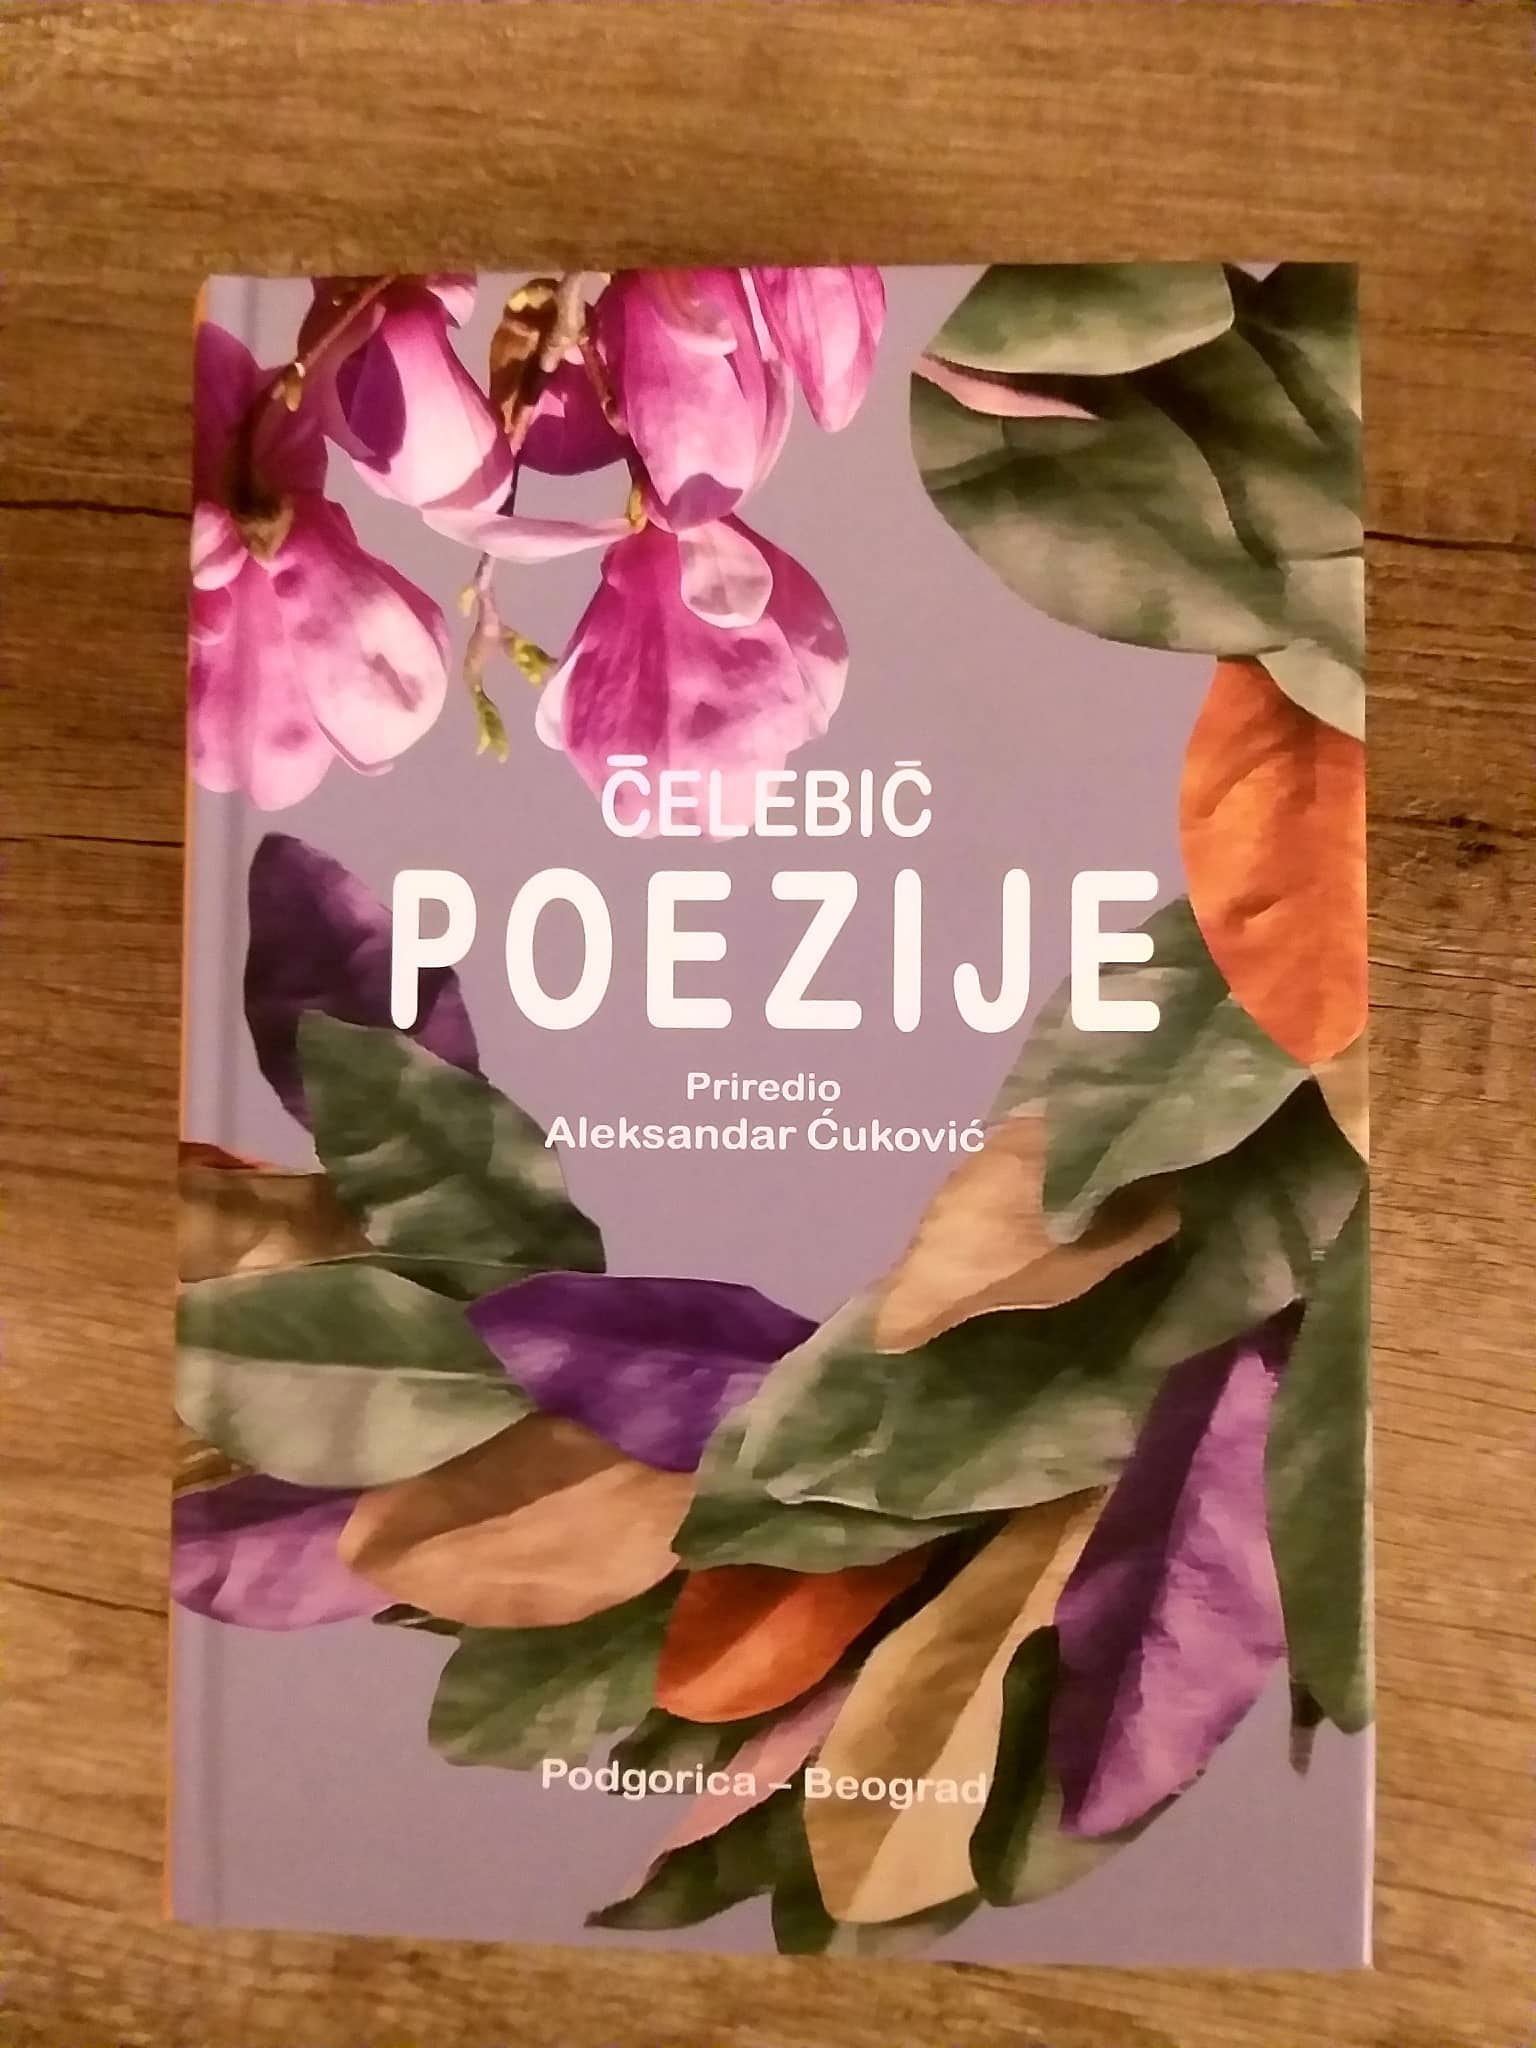 Knjiga sabrane poezije književnika i diplomate Gojka Čelebića